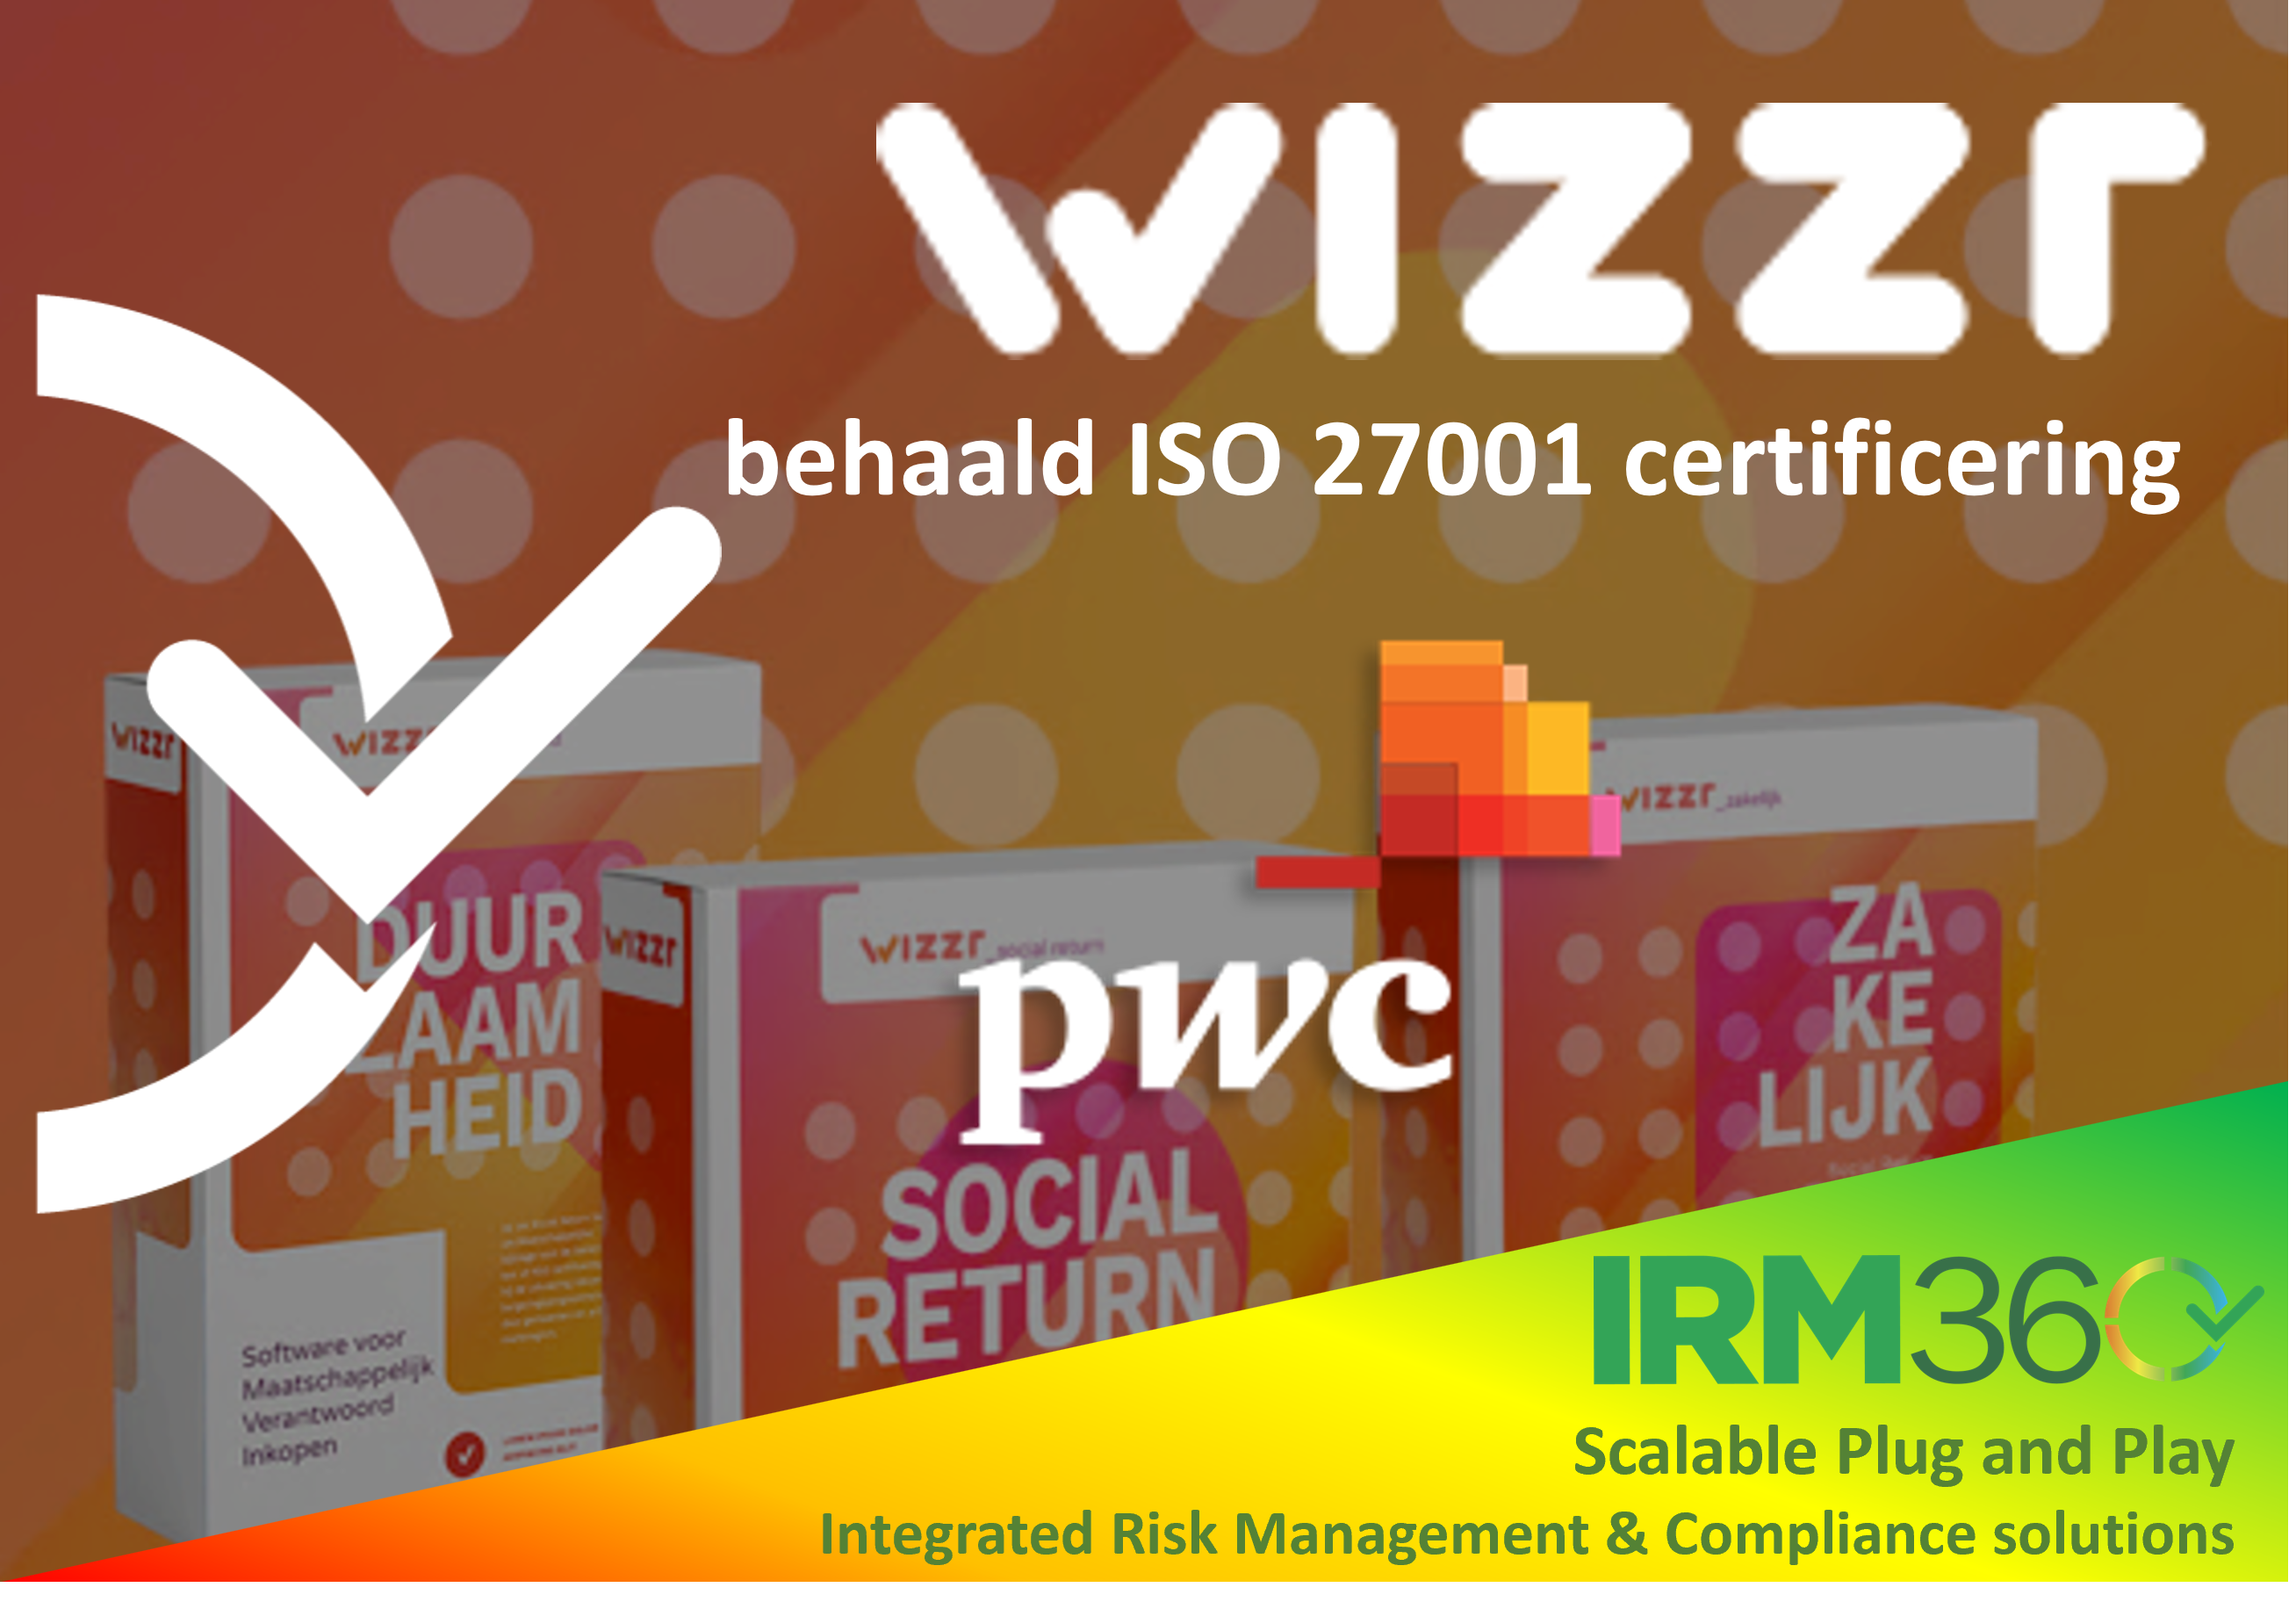 Wizzr postiže certifikat ISO 27001!